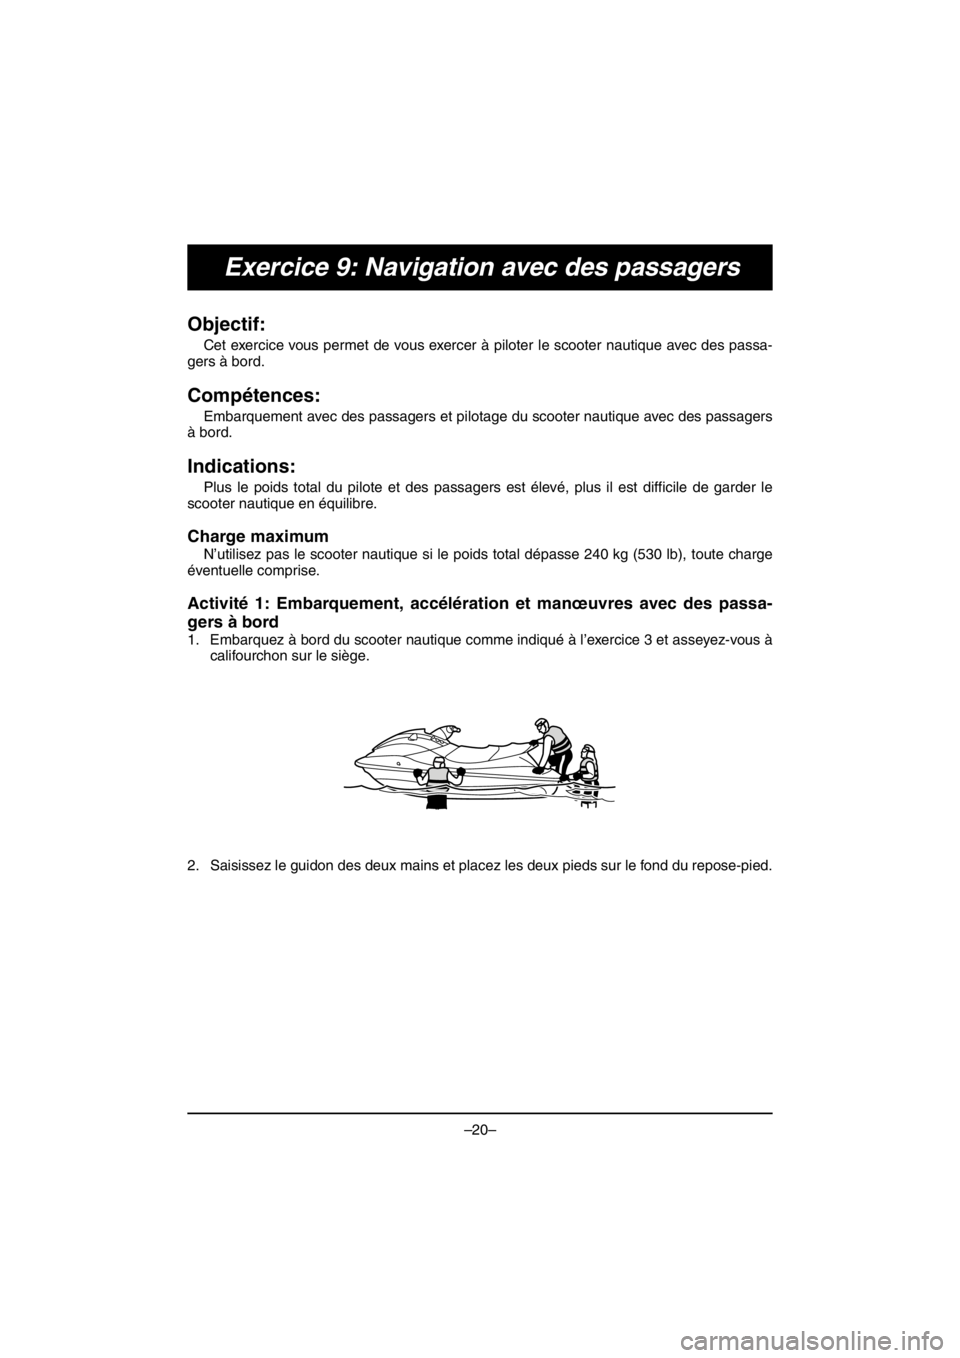 YAMAHA VX DELUXE 2016  Notices Demploi (in French) –20–
Exercice 9: Navigation avec des passagers
Objectif: 
Cet exercice vous permet de vous exercer à piloter le scooter nautique avec des passa-
gers à bord.
Compétences: 
Embarquement avec des